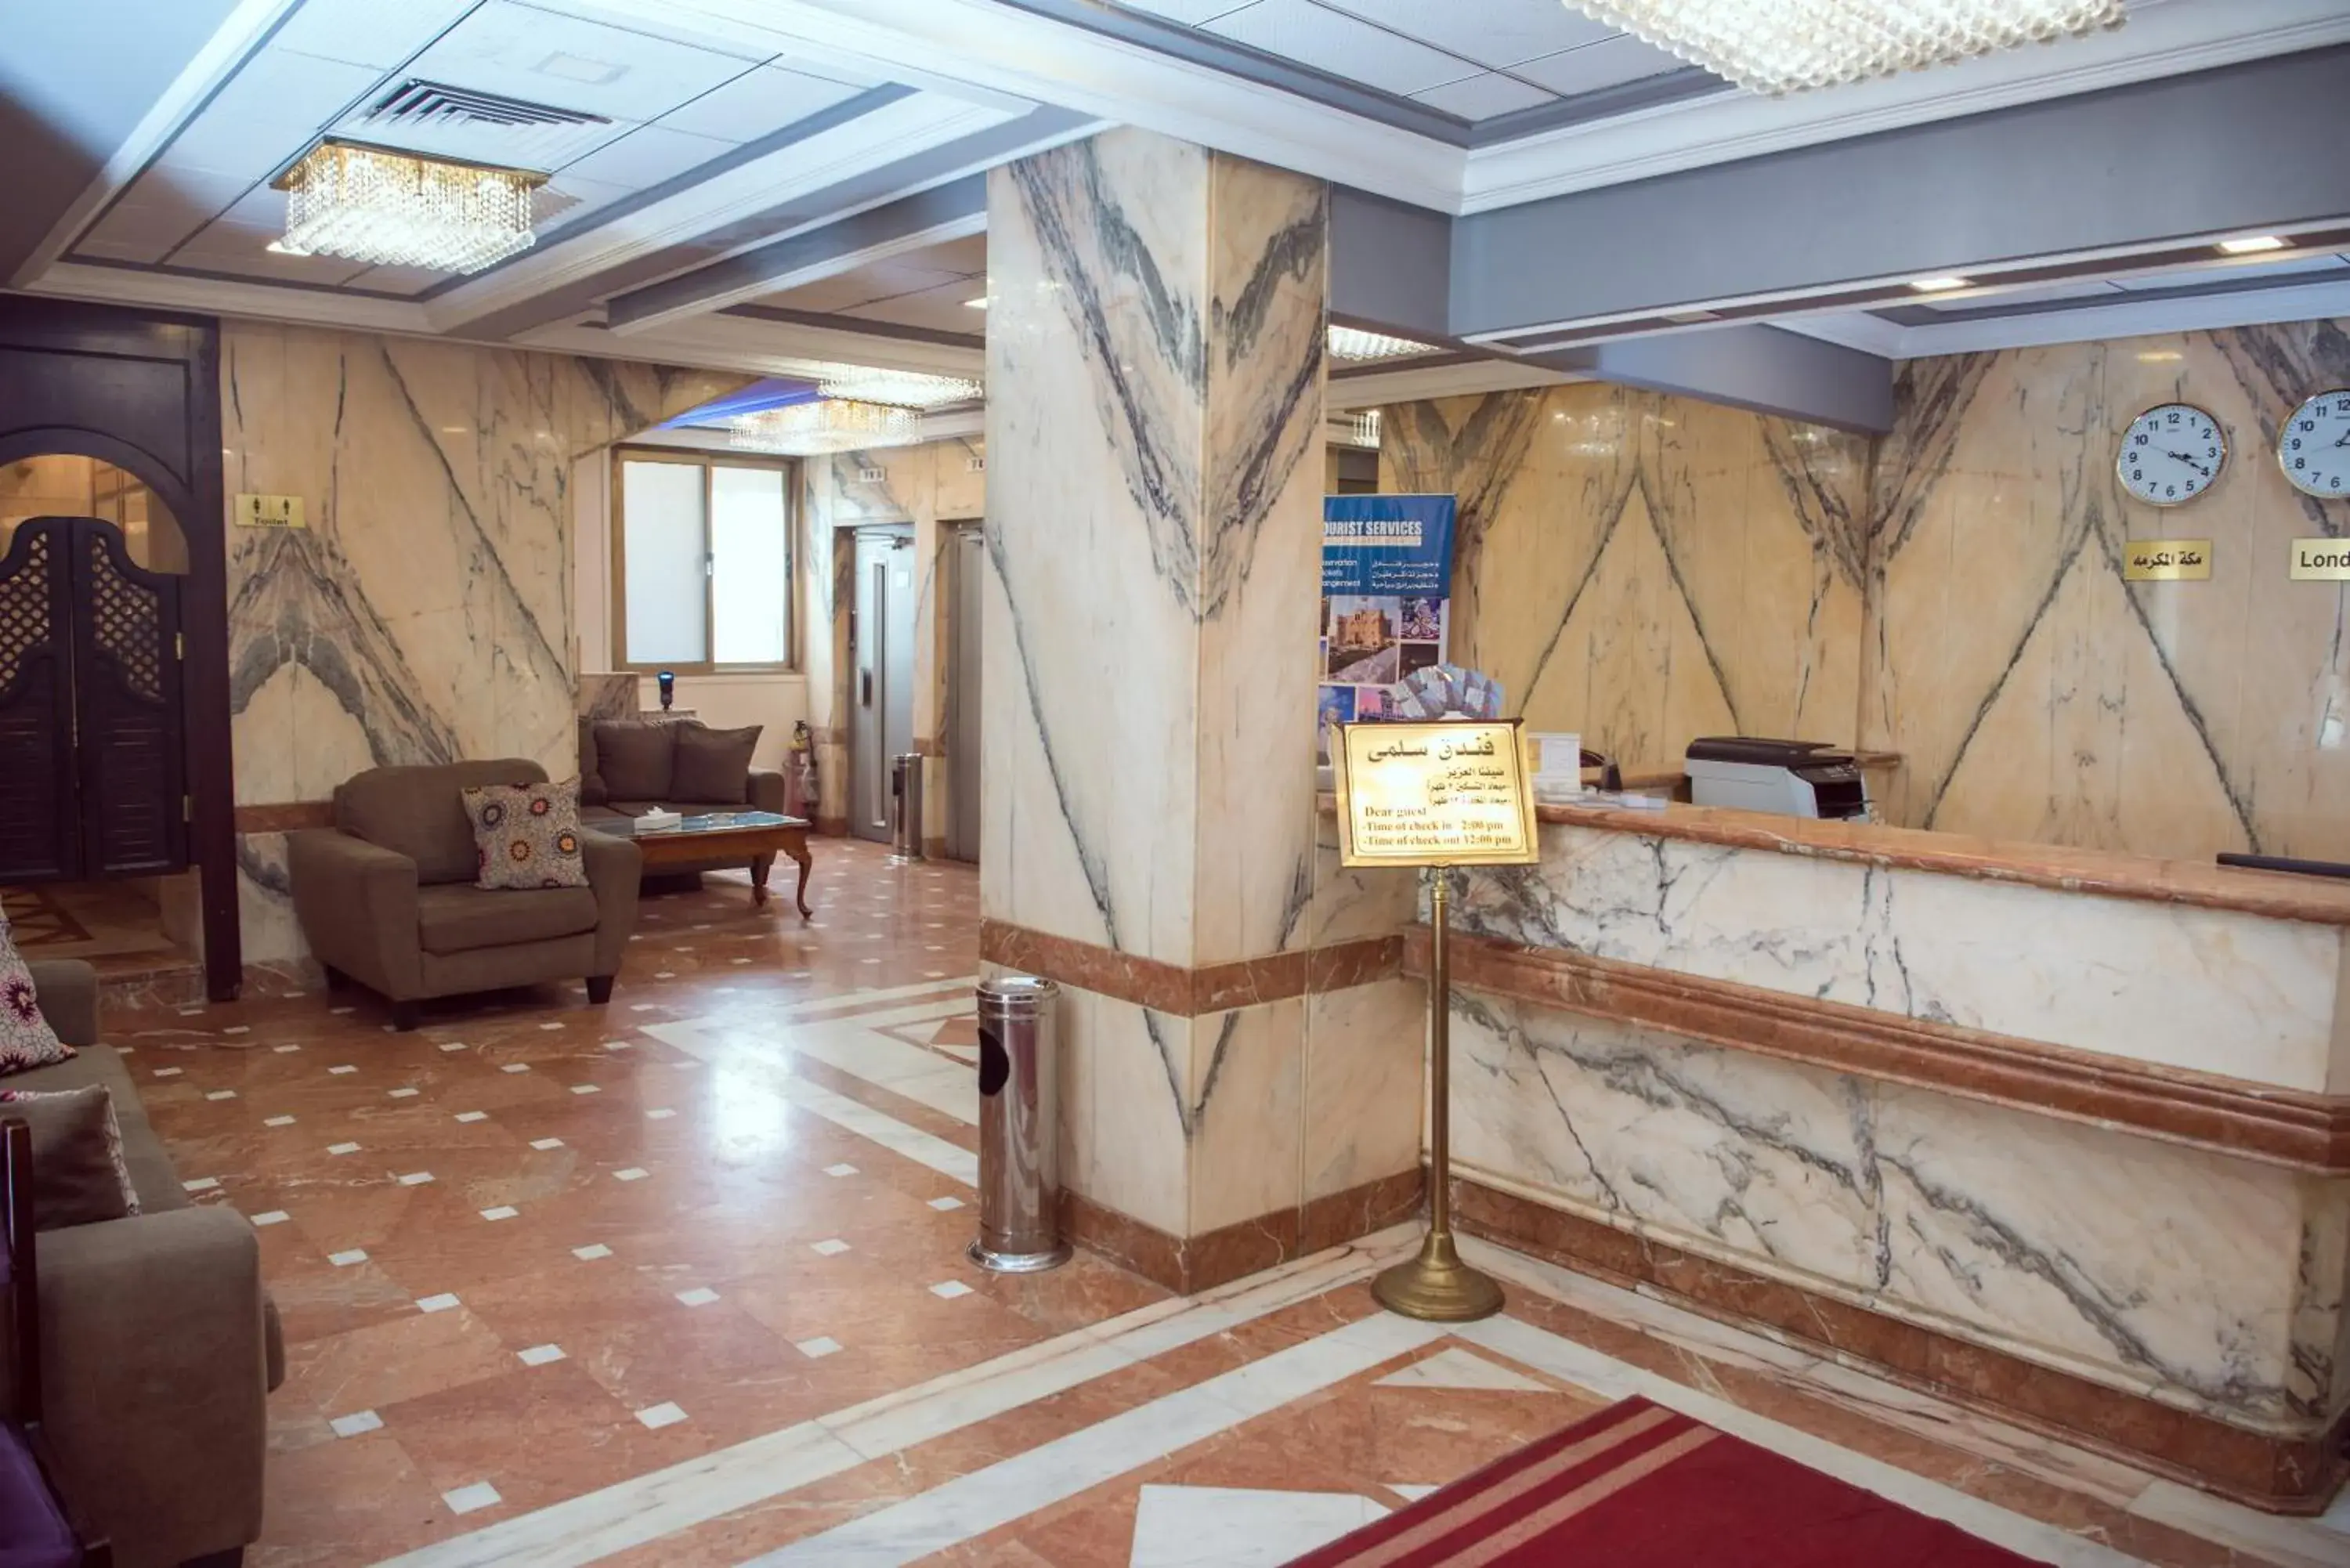 Lobby or reception, Lobby/Reception in Salma Hotel Cairo